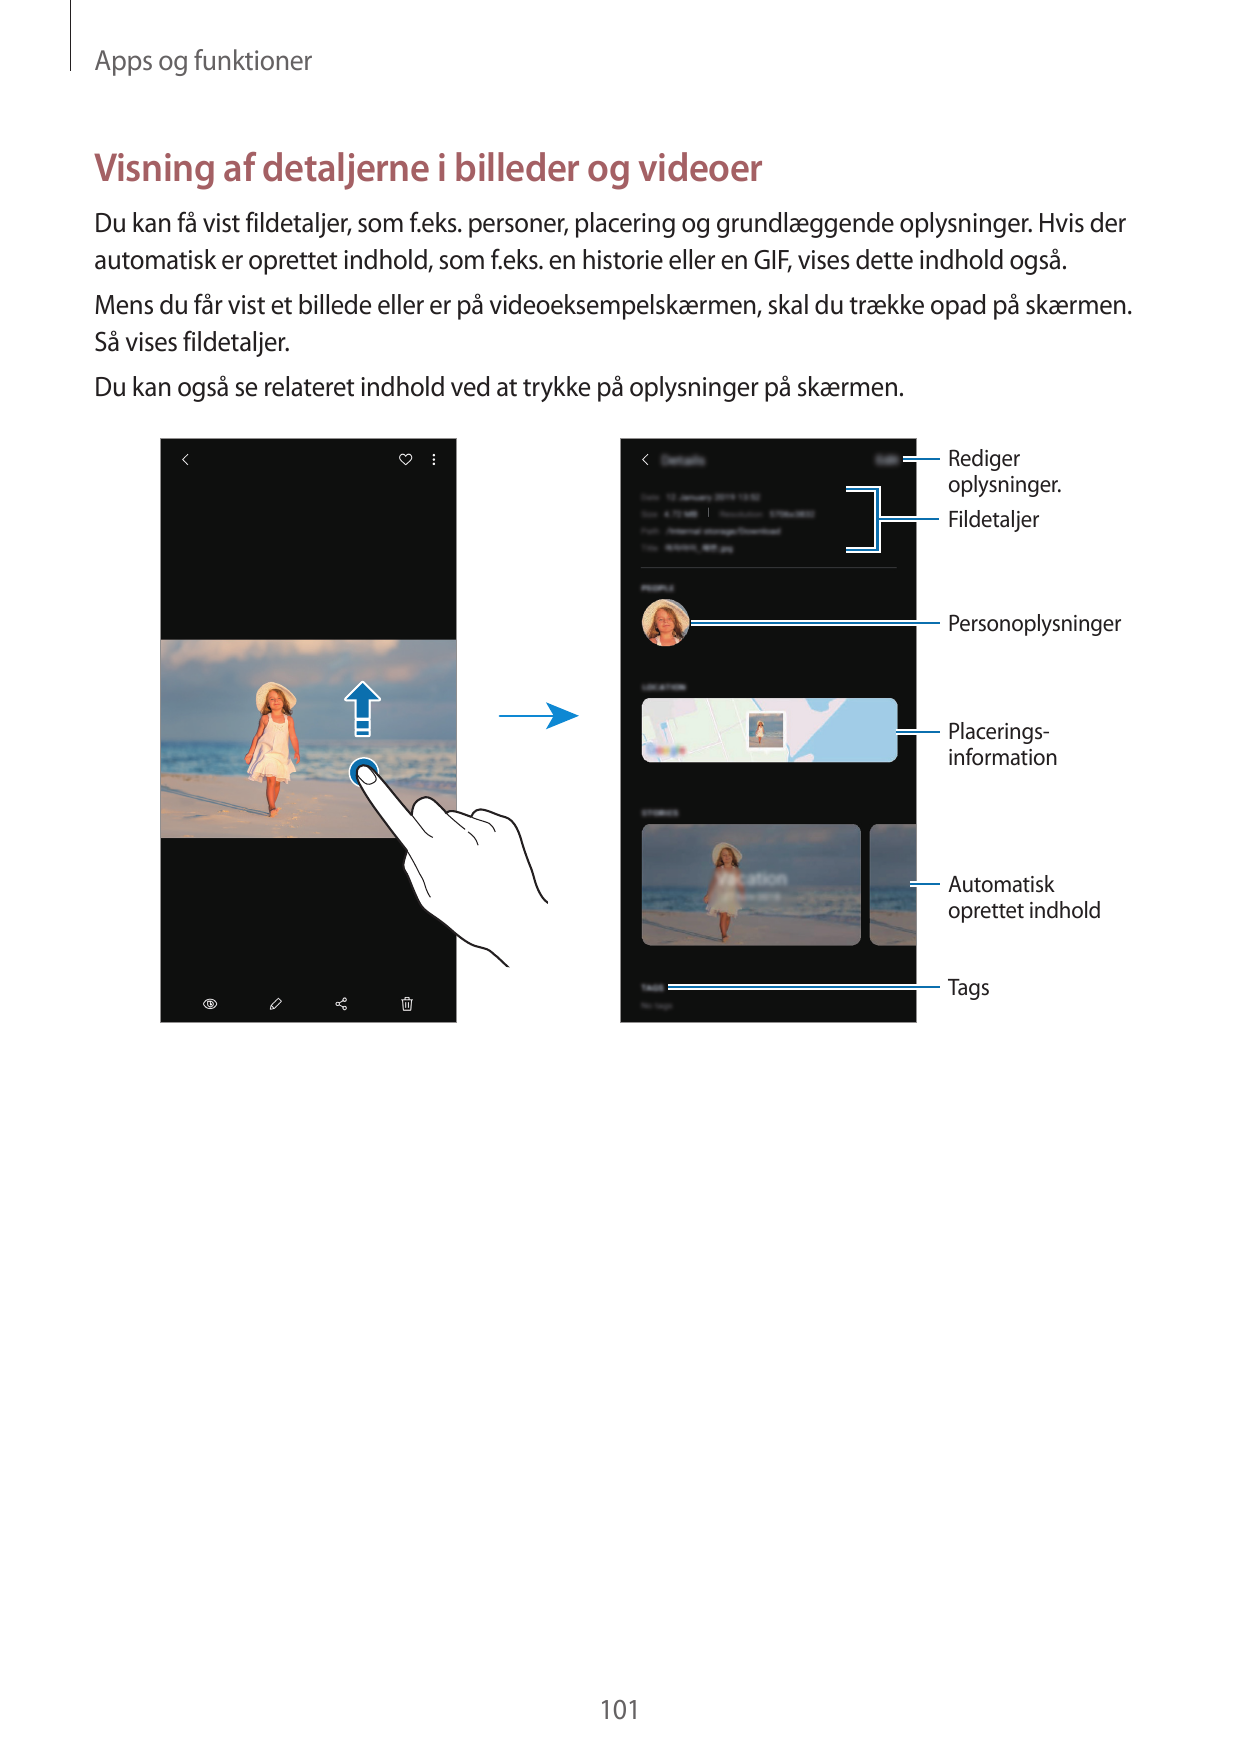 Apps og funktionerVisning af detaljerne i billeder og videoerDu kan få vist fildetaljer, som f.eks. personer, placering og grund